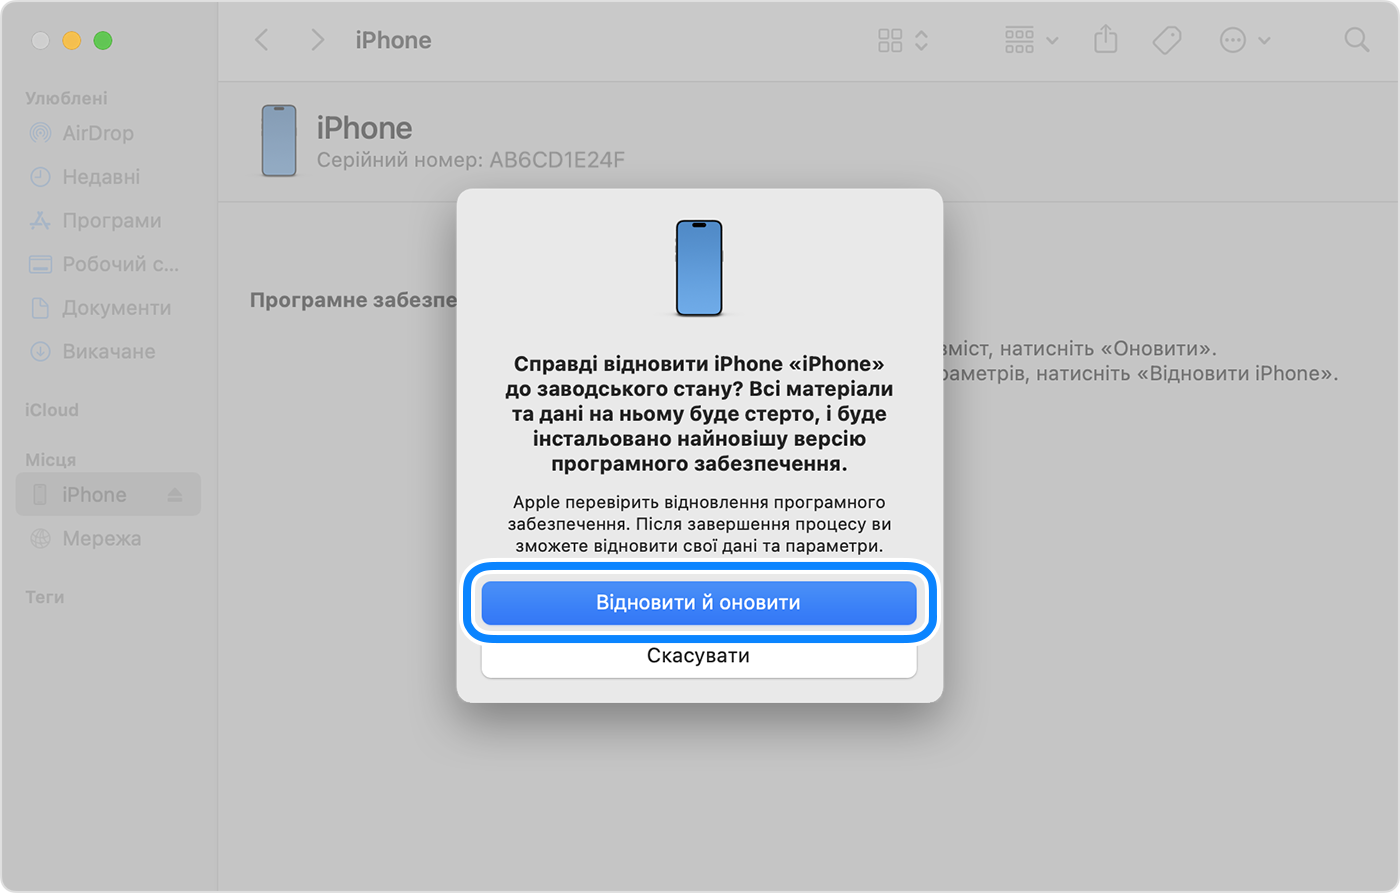 Щоб відновити й оновити iPhone за допомогою комп’ютера, натисніть «Відновити й оновити» для підтвердження.